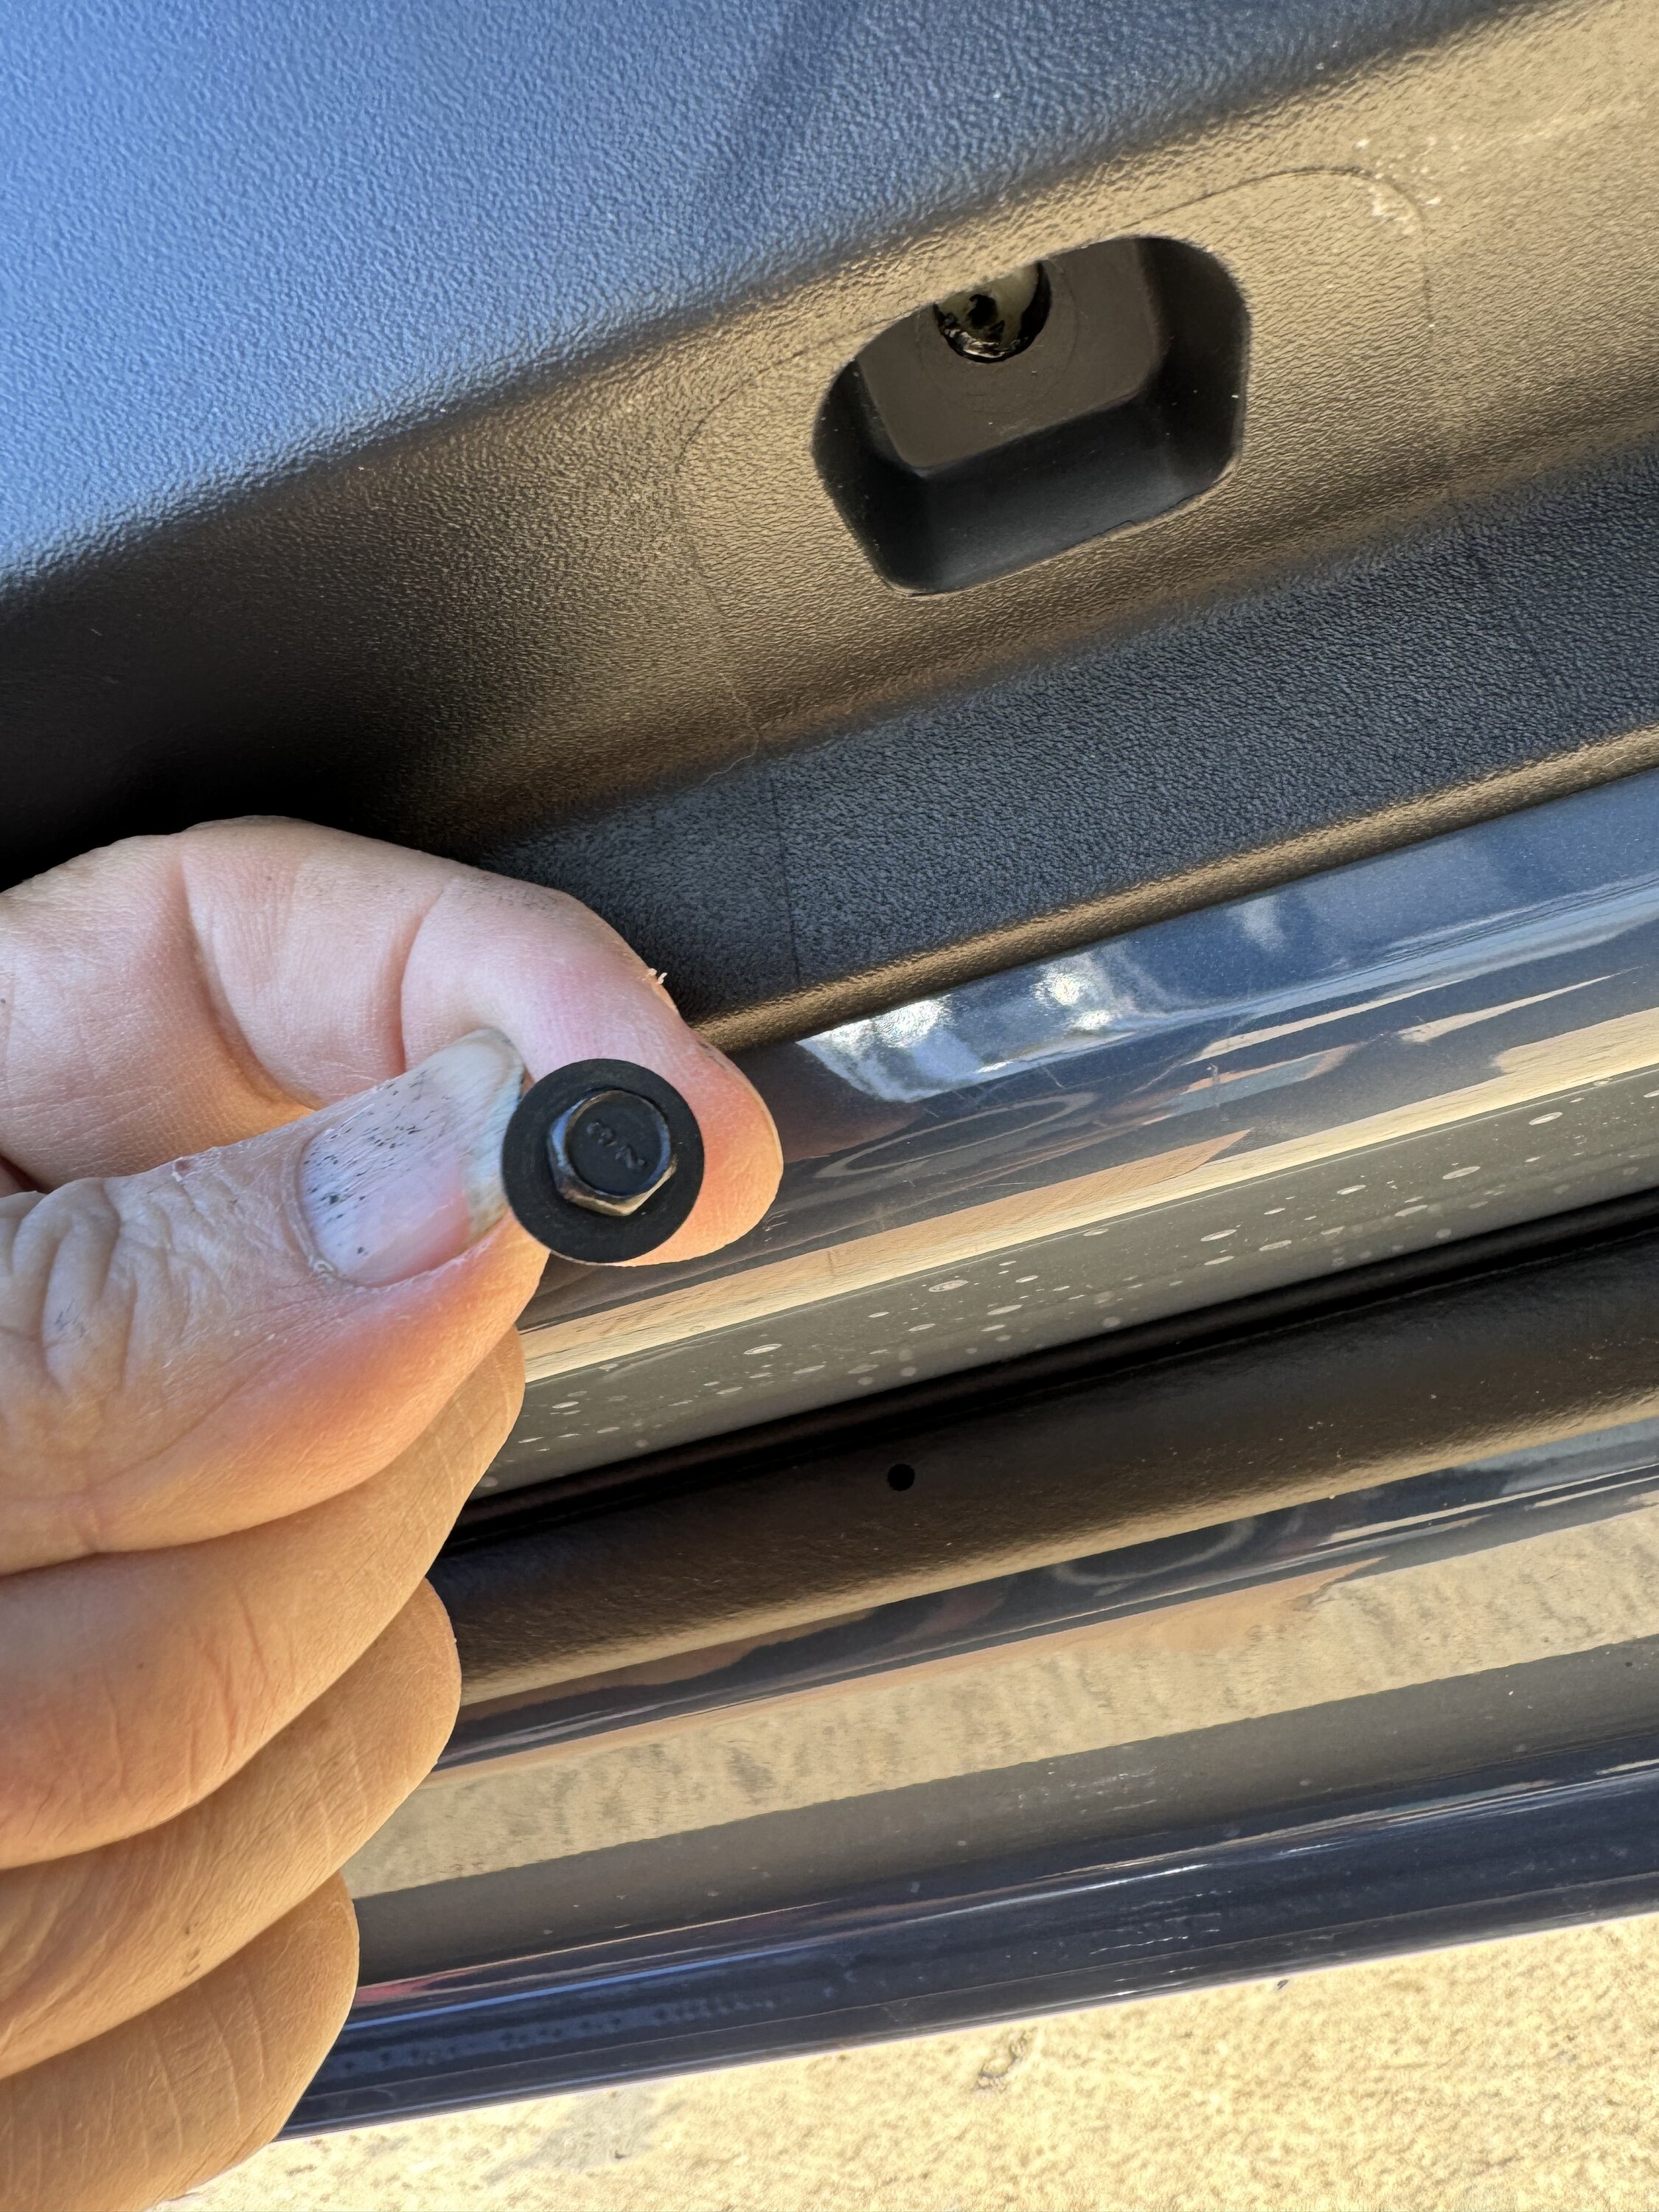 S650 Mustang Removed Door Panels for Speaker Upgrade - DIY Writeup IMG_0607